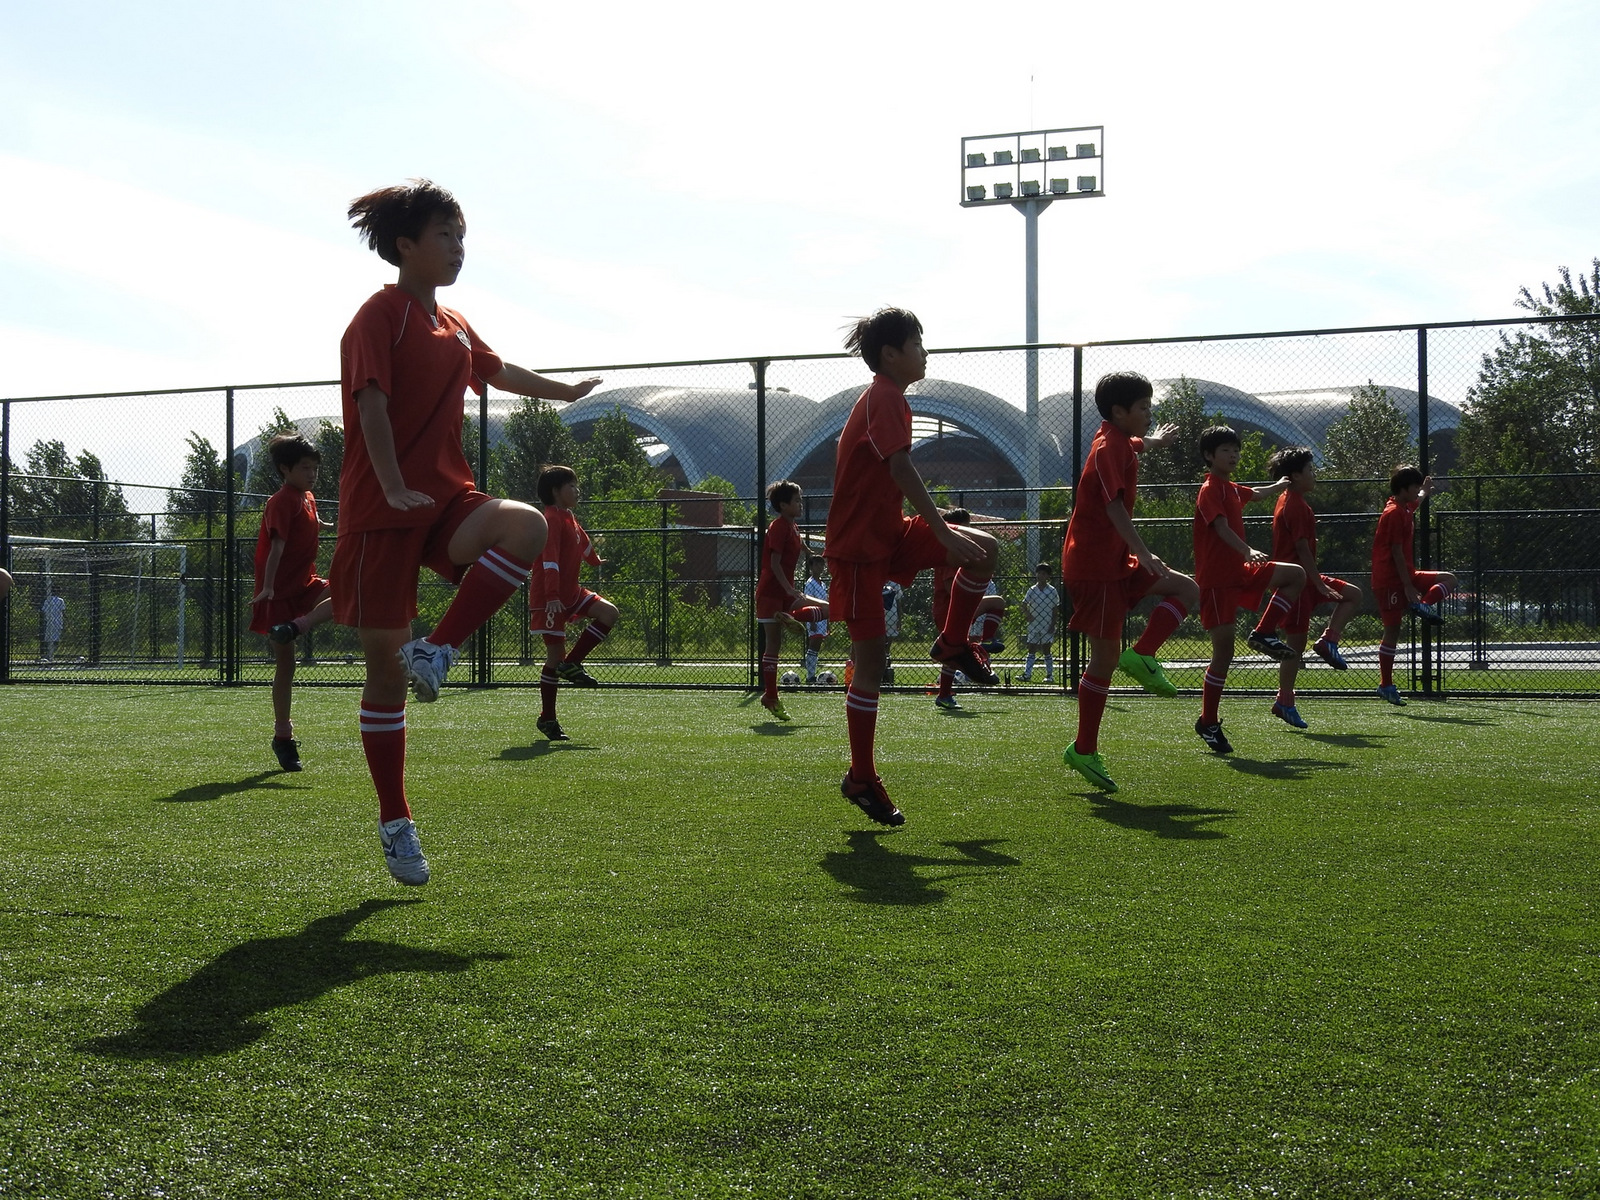 Ζέσταμα και ασκήσεις γυμναστικής νεαρών αθλητών στη Διεθνή Ποδοσφαιρική Ακαδημία της Πιονγιάνγκ, με εγκαταστάσεις που δεν έχουν να ζηλέψουν τίποτα από αυτές δυτικών χωρών.